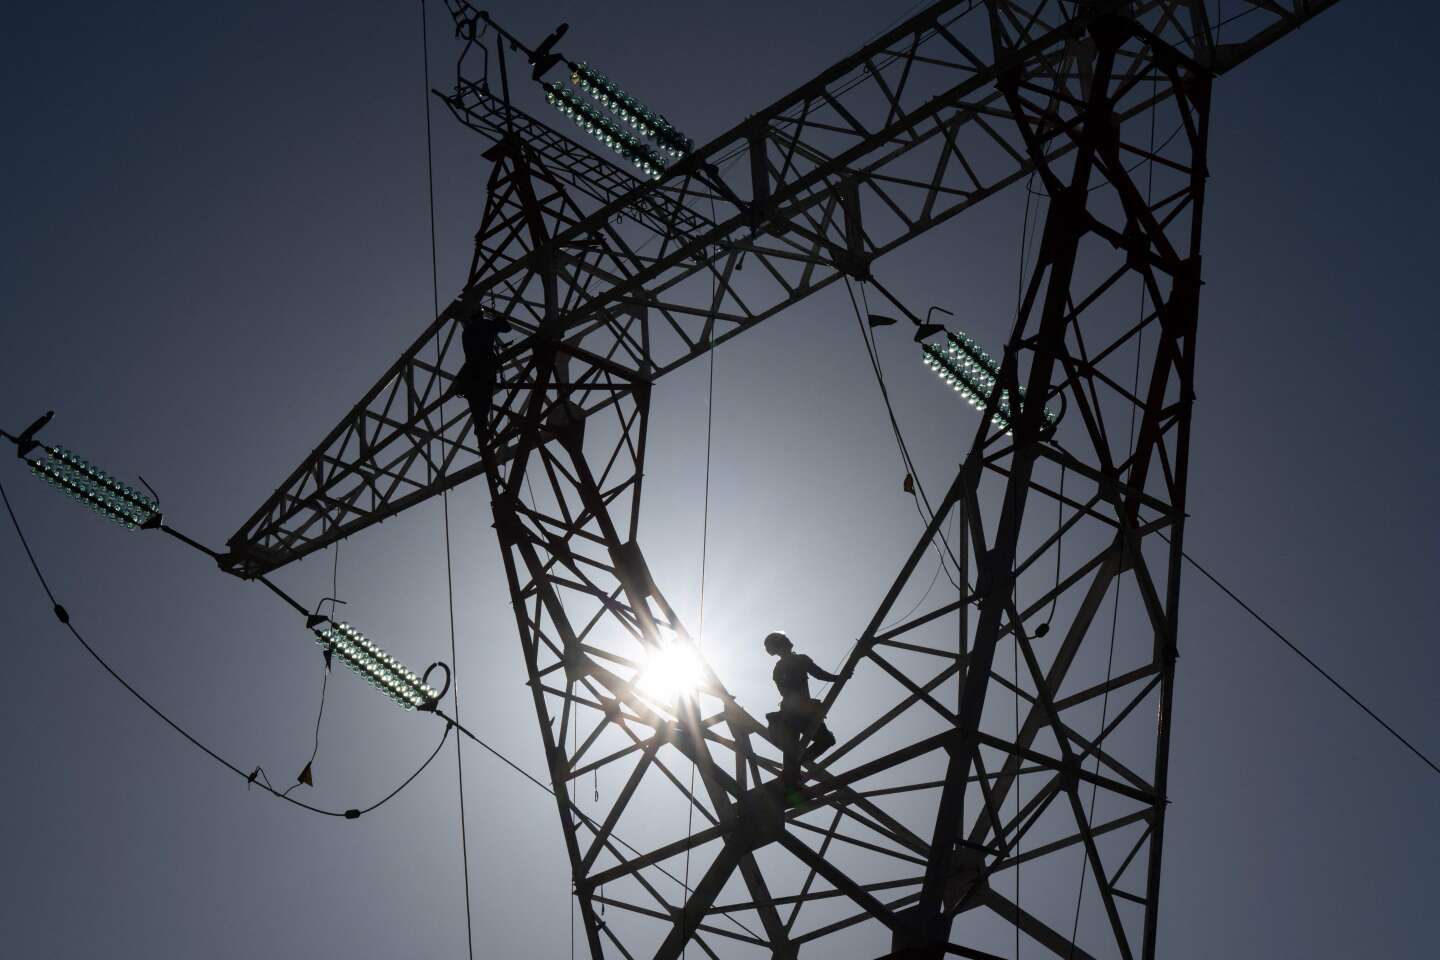 Le risque de tensions sur le réseau électrique en janvier est « élevé », avertit RTE